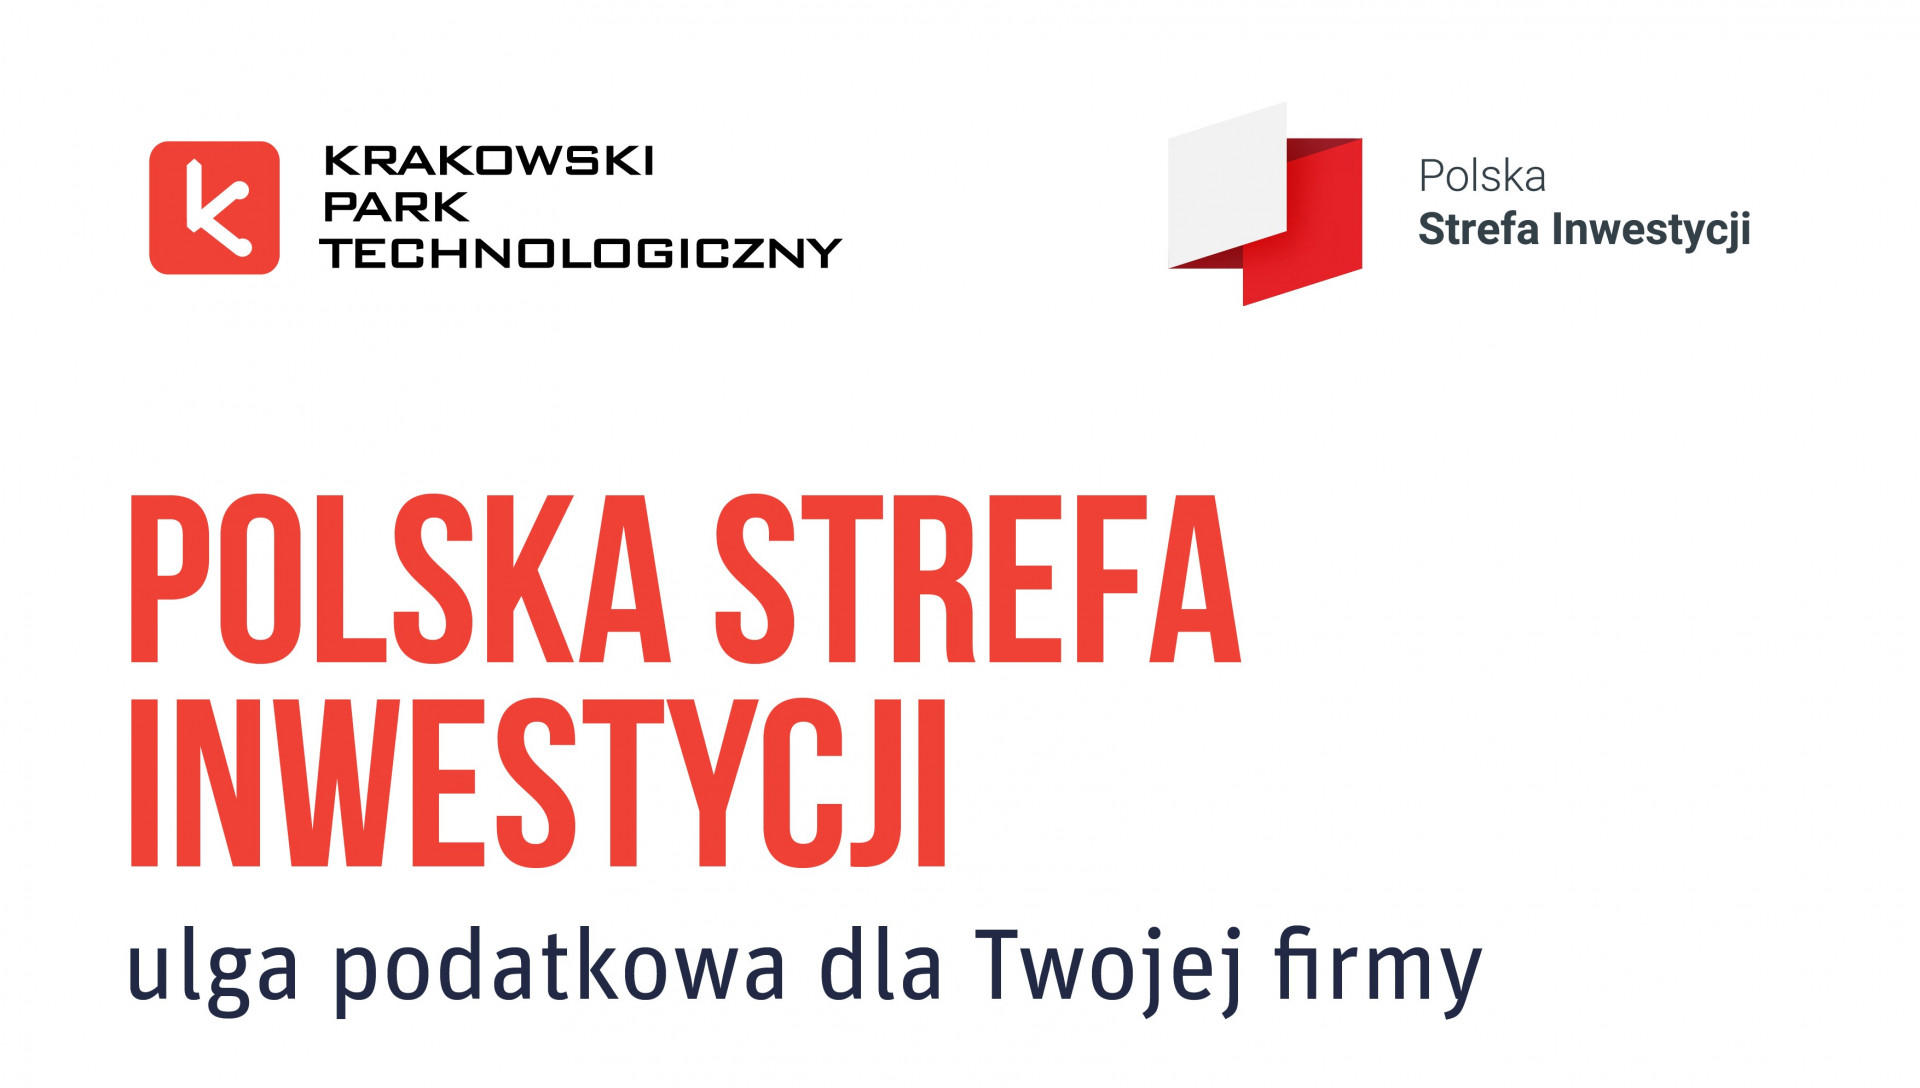 Ulgi podatkowe dla małopolskich przedsiębiorców. Wsparcie Krakowskiego Parku Technologicznego dla firm